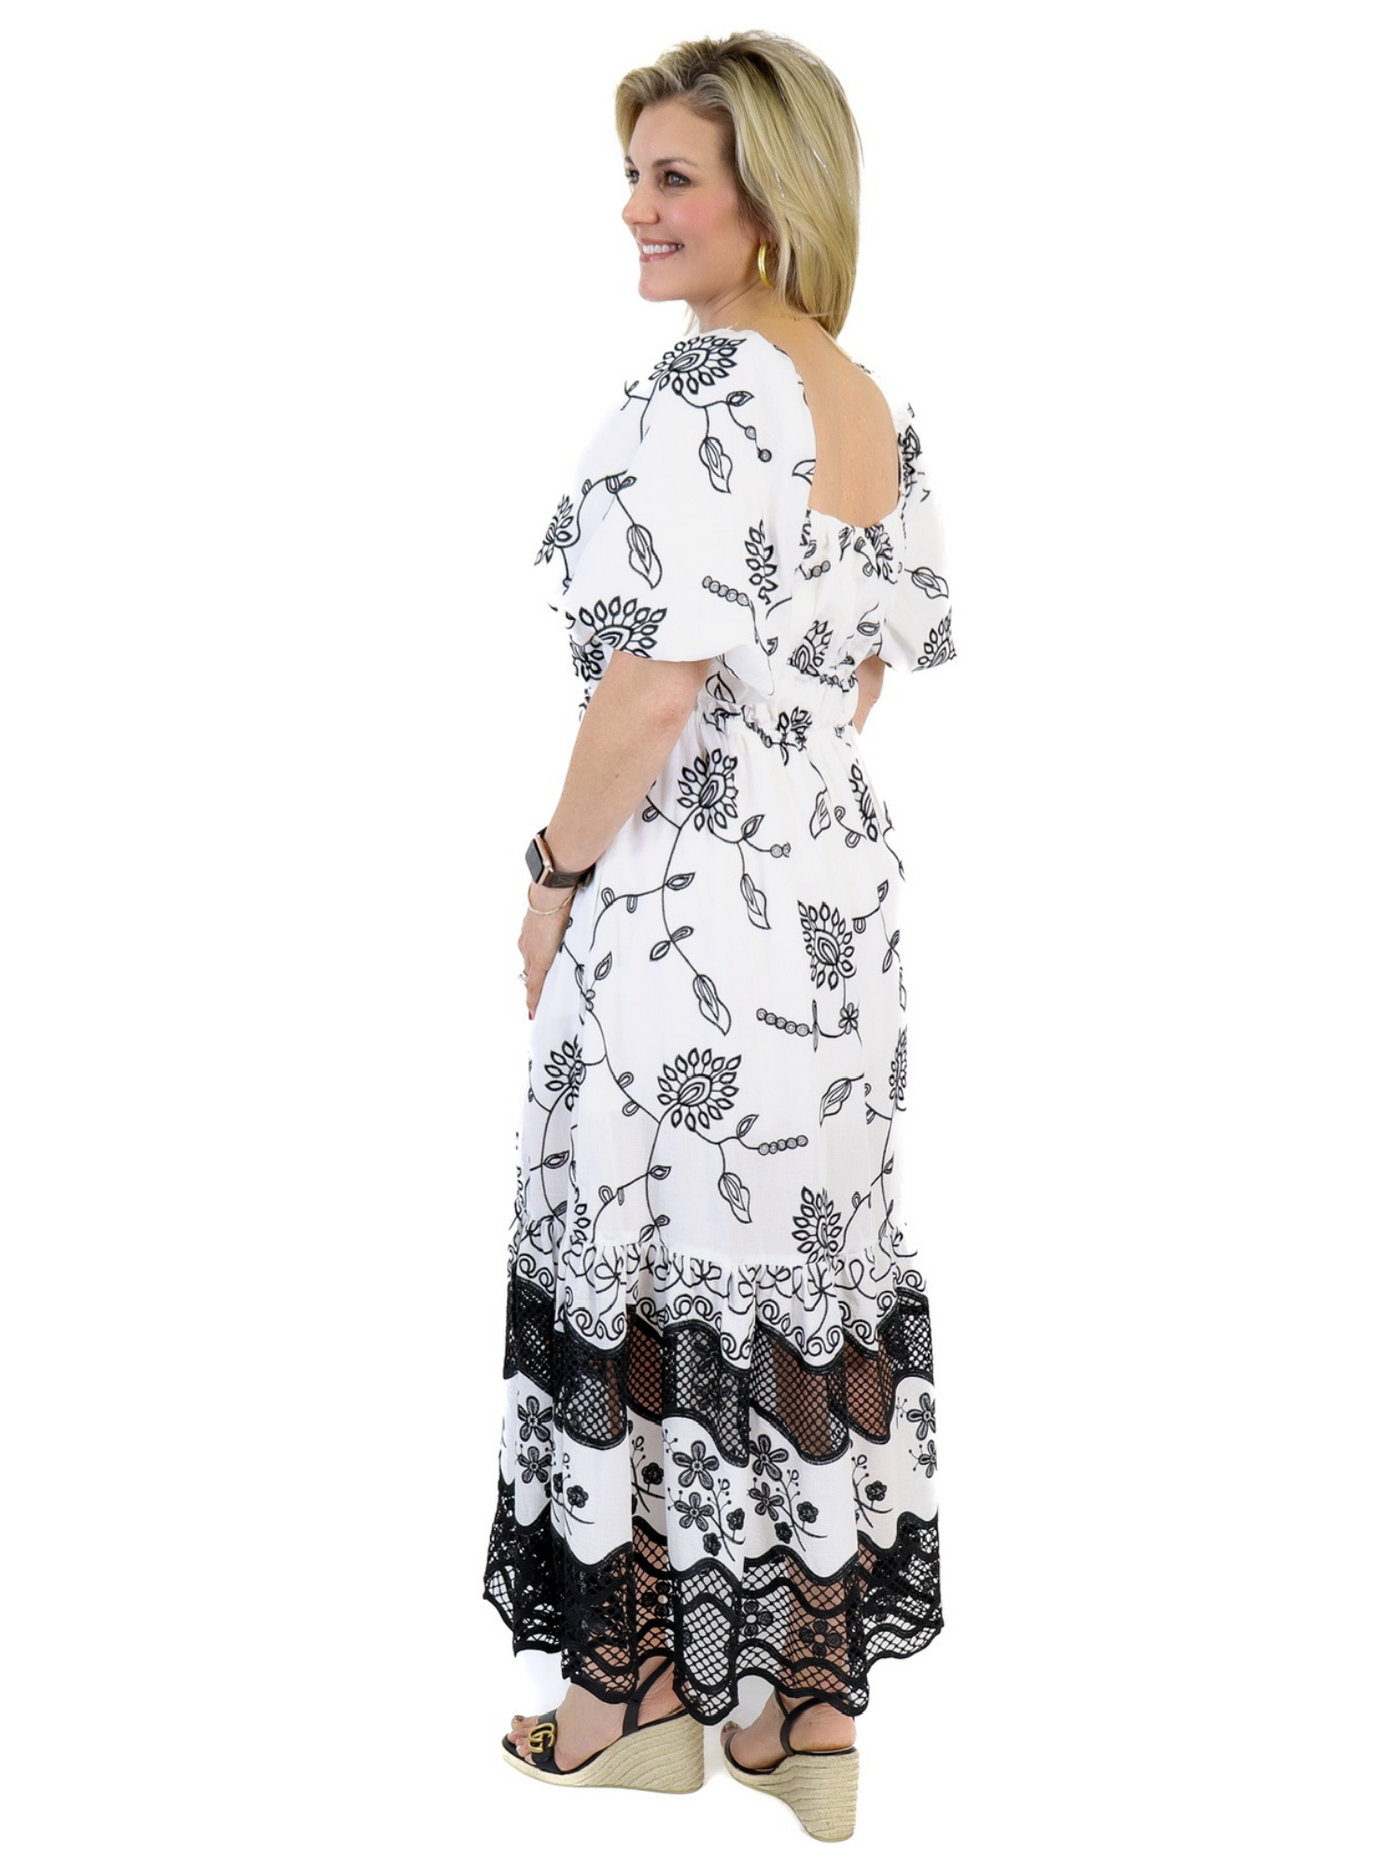 Ciebon Crochet Maxi Dress - Black/White back view.